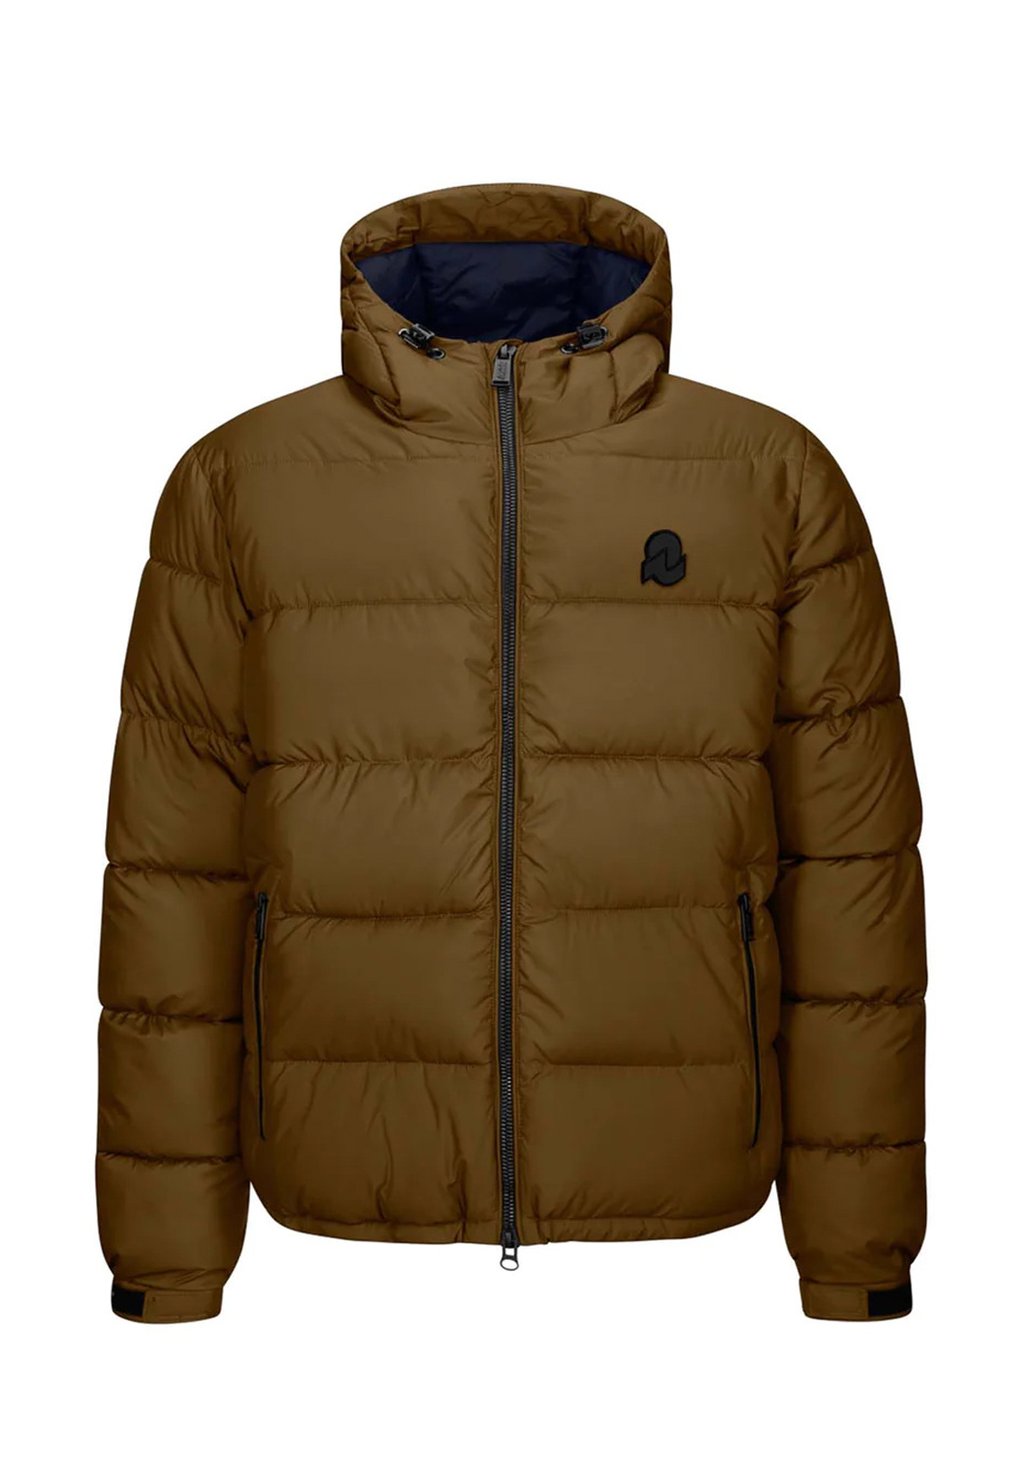 Зимняя куртка INVICTA, коричневая